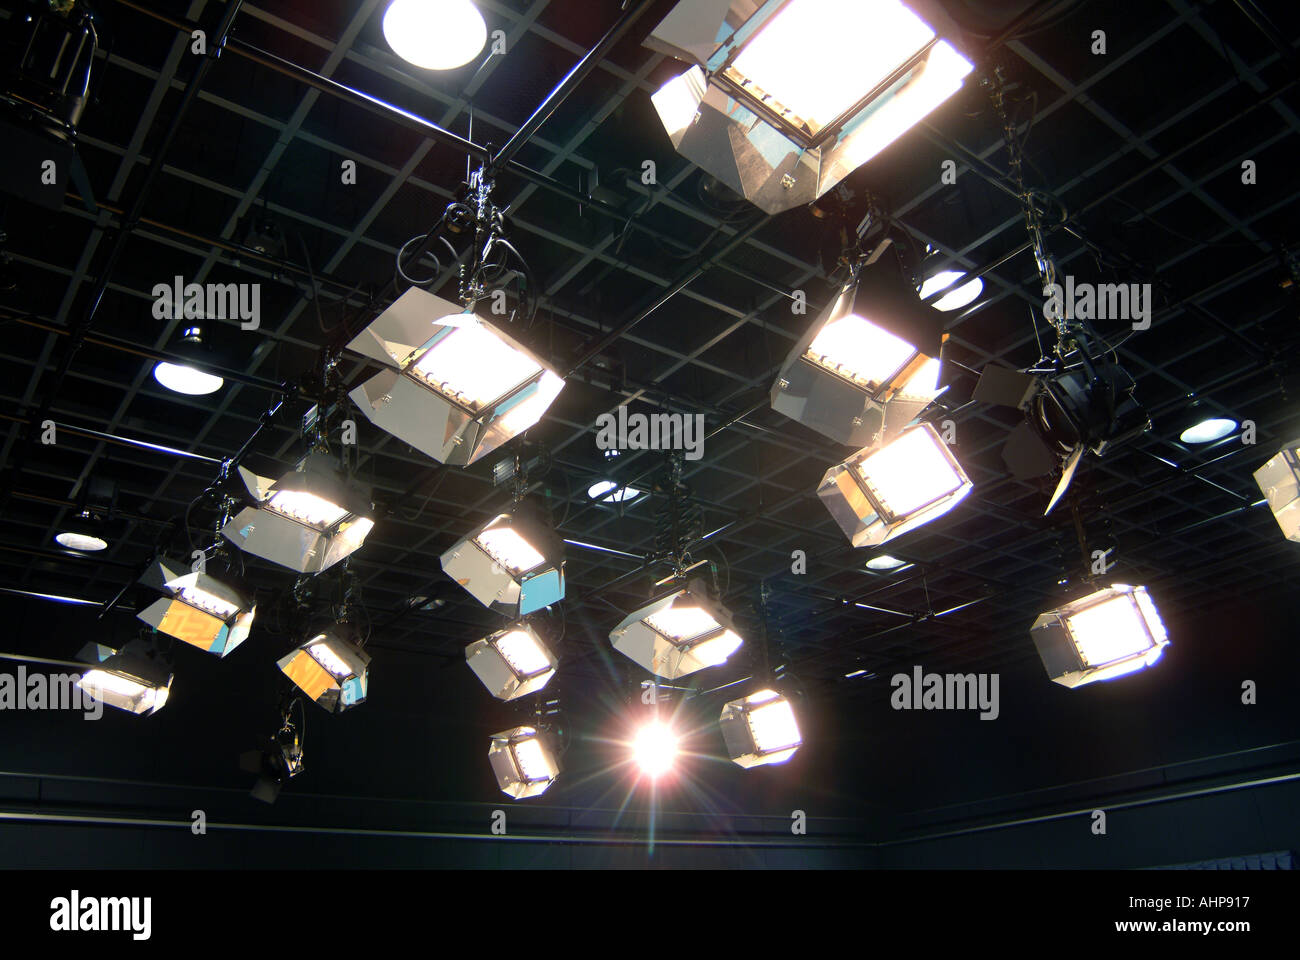 tv studio lights